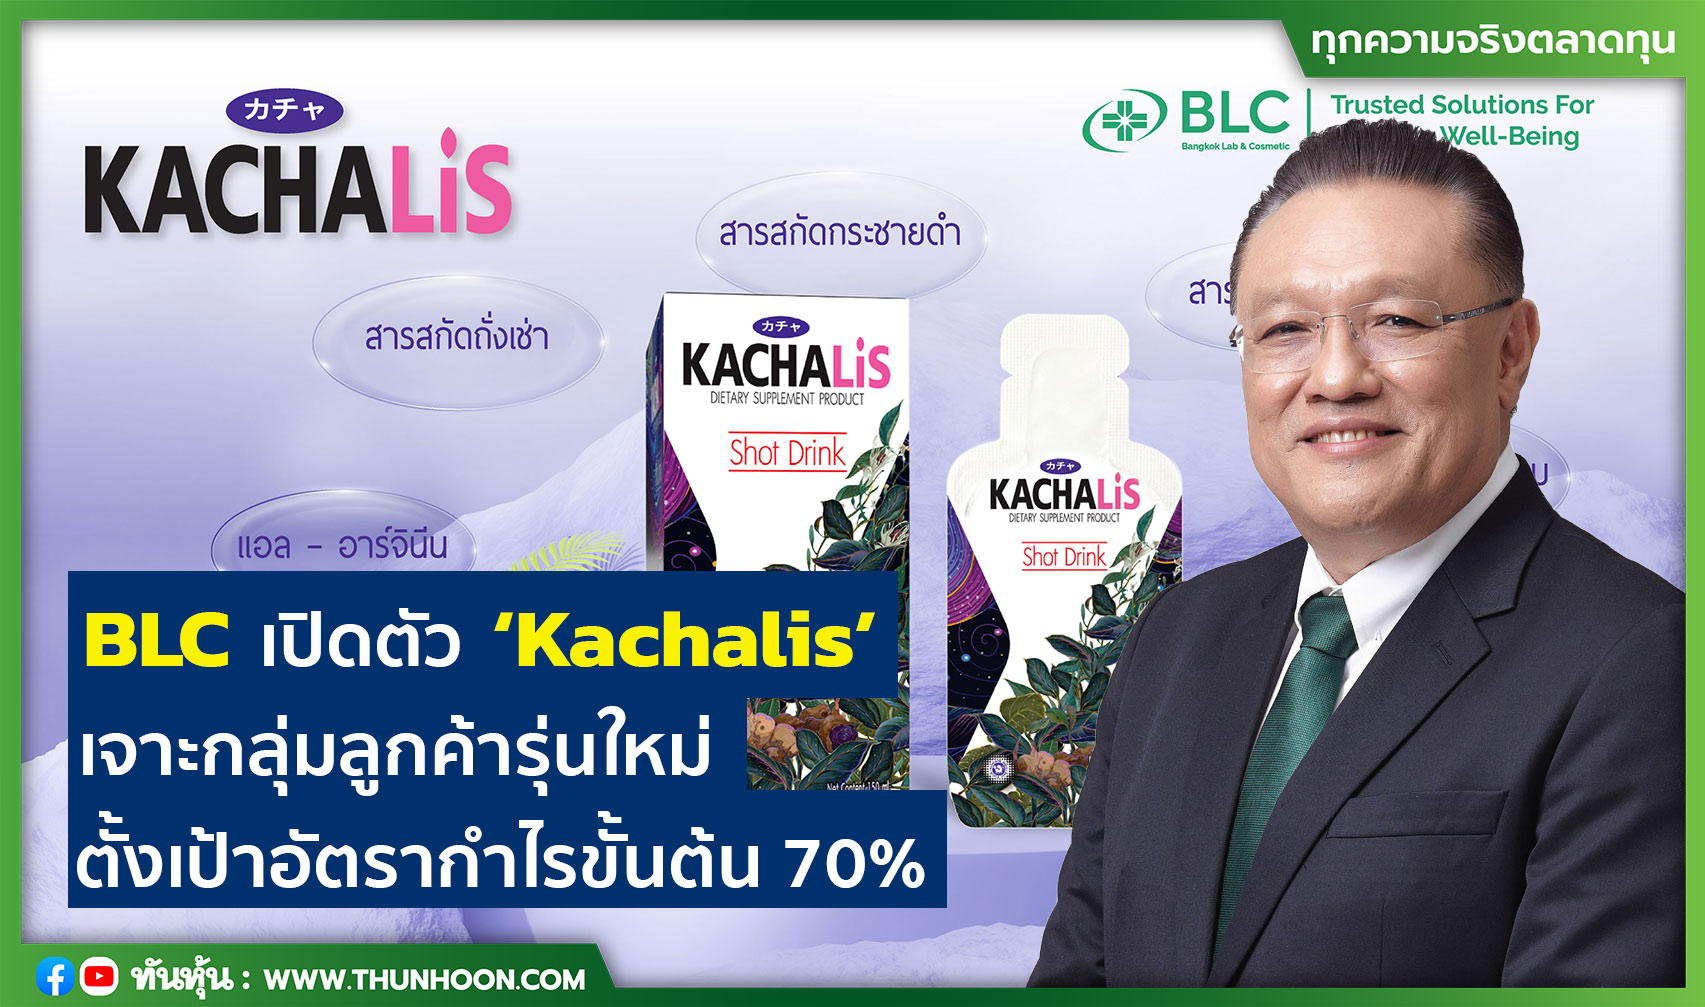 BLC เปิดตัว ‘Kachalis’ เจาะกลุ่มลูกค้ารุ่นใหม่ ตั้งเป้าอัตรากำไรขั้นต้น 70%